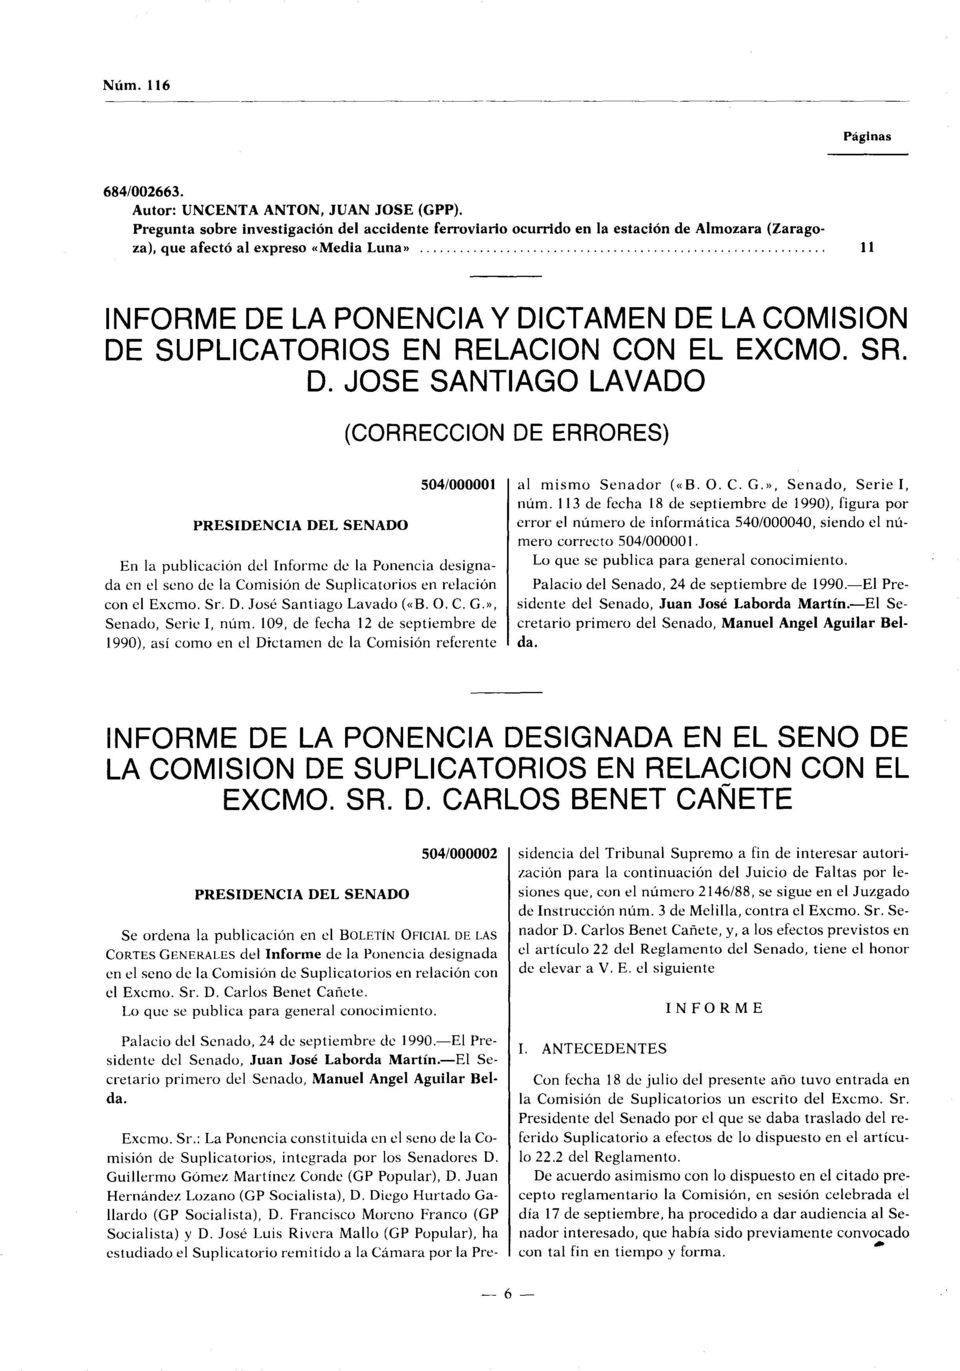 JOSE SANTIAGO LAVADO (CORRECCION DE ERRORES) PRESIDENCIA DEL SENADO 504/000001 En la publicación del Informe de la Ponencia designada en el seno de la Comisión de Suplicatorios en relación con el